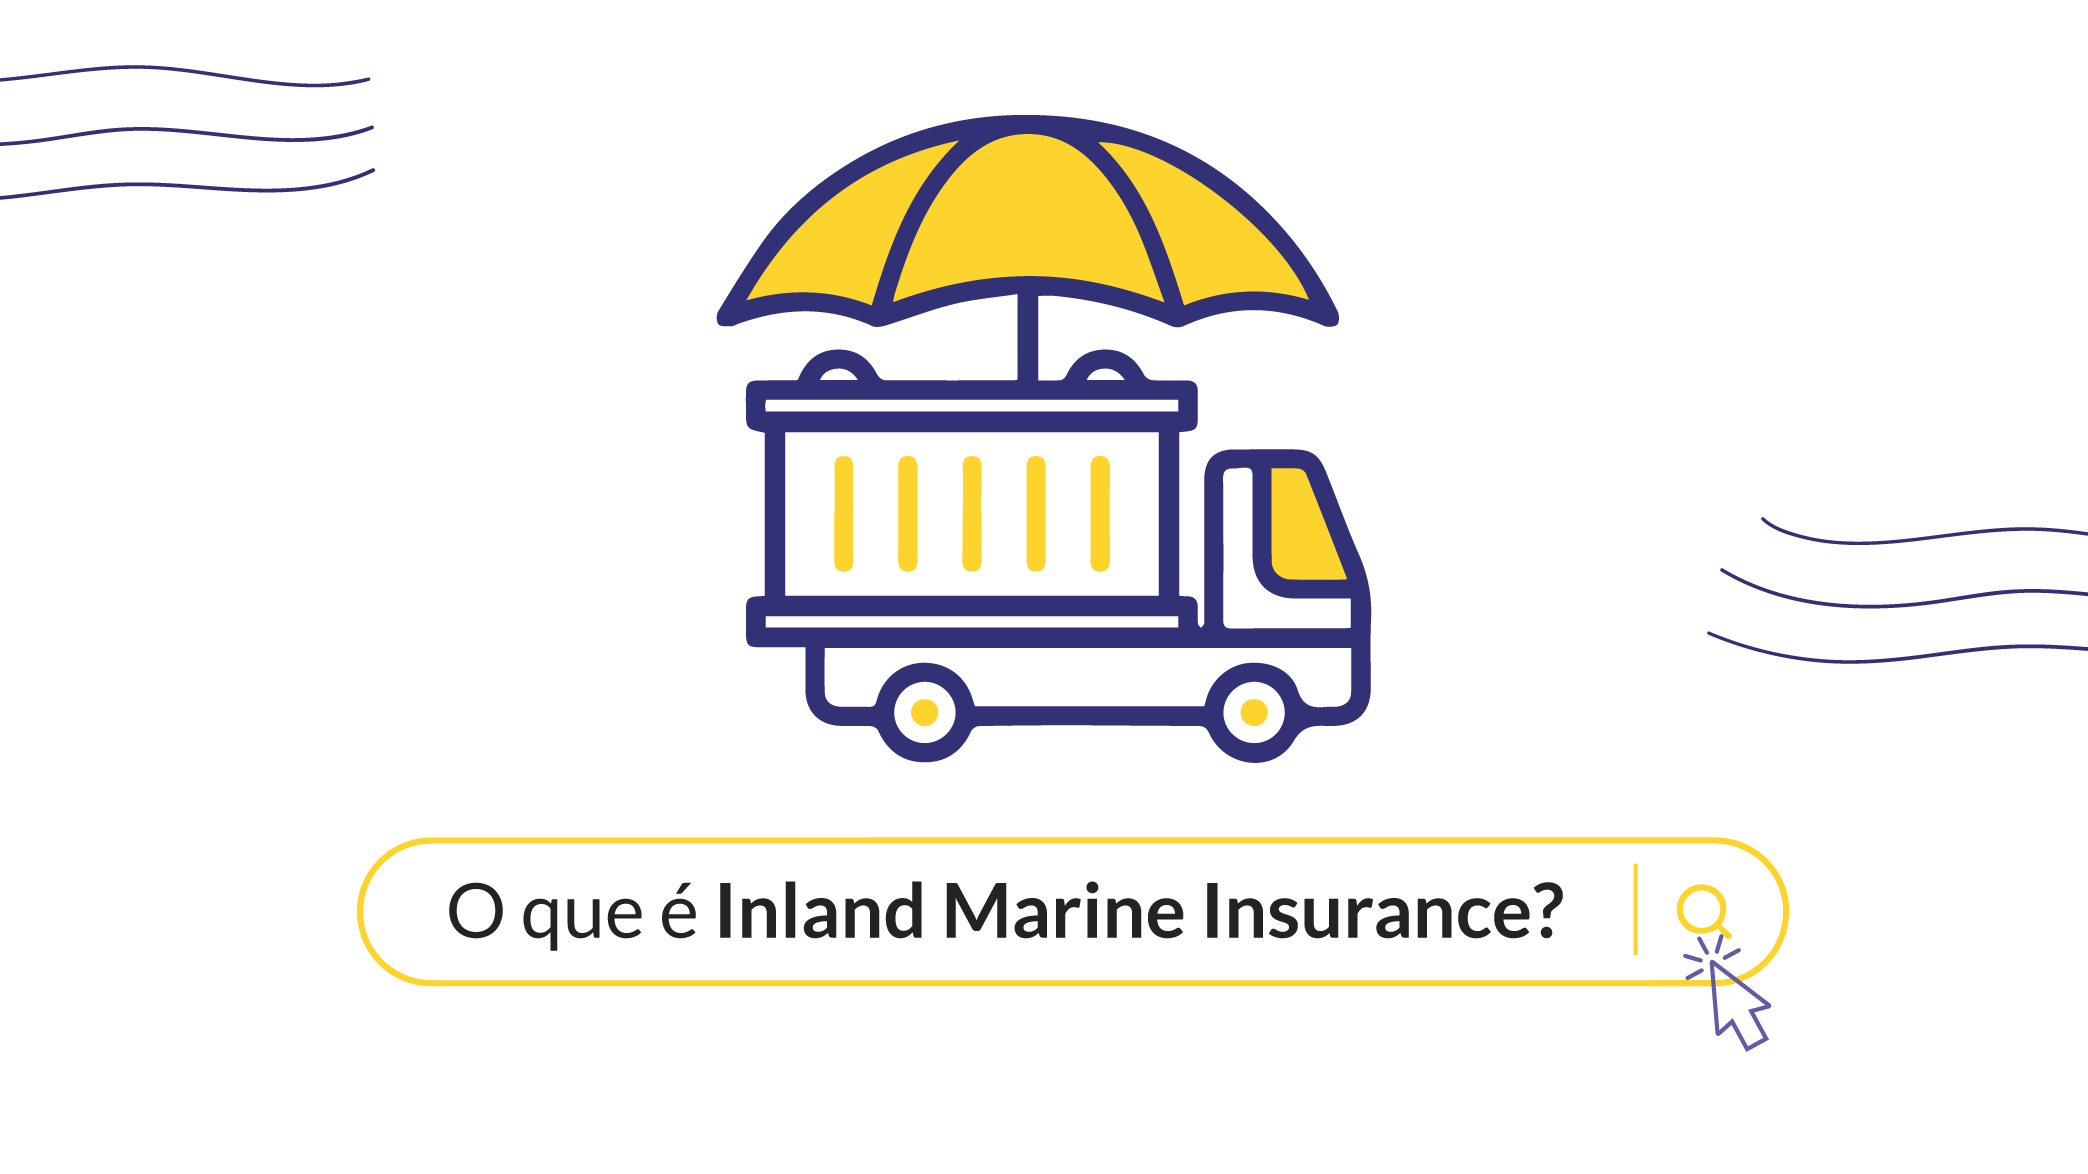 >O que é Inland Marine Insurance e por que ele é um seguro terrestre? 